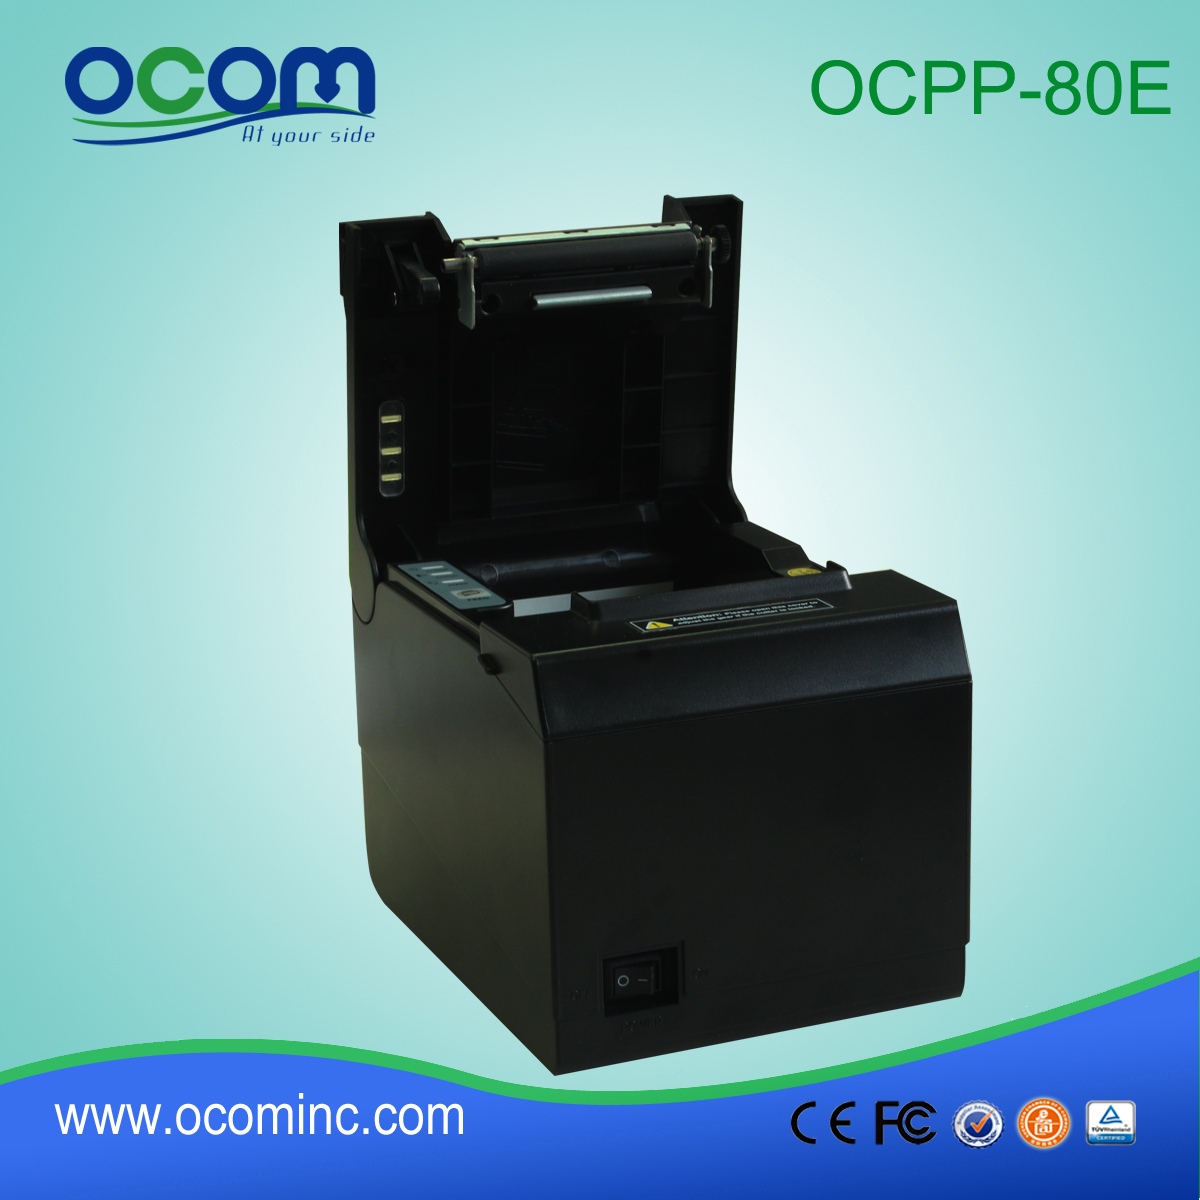 OCPP-80E 80mm pos recepção impressora suporte térmico montado na parede